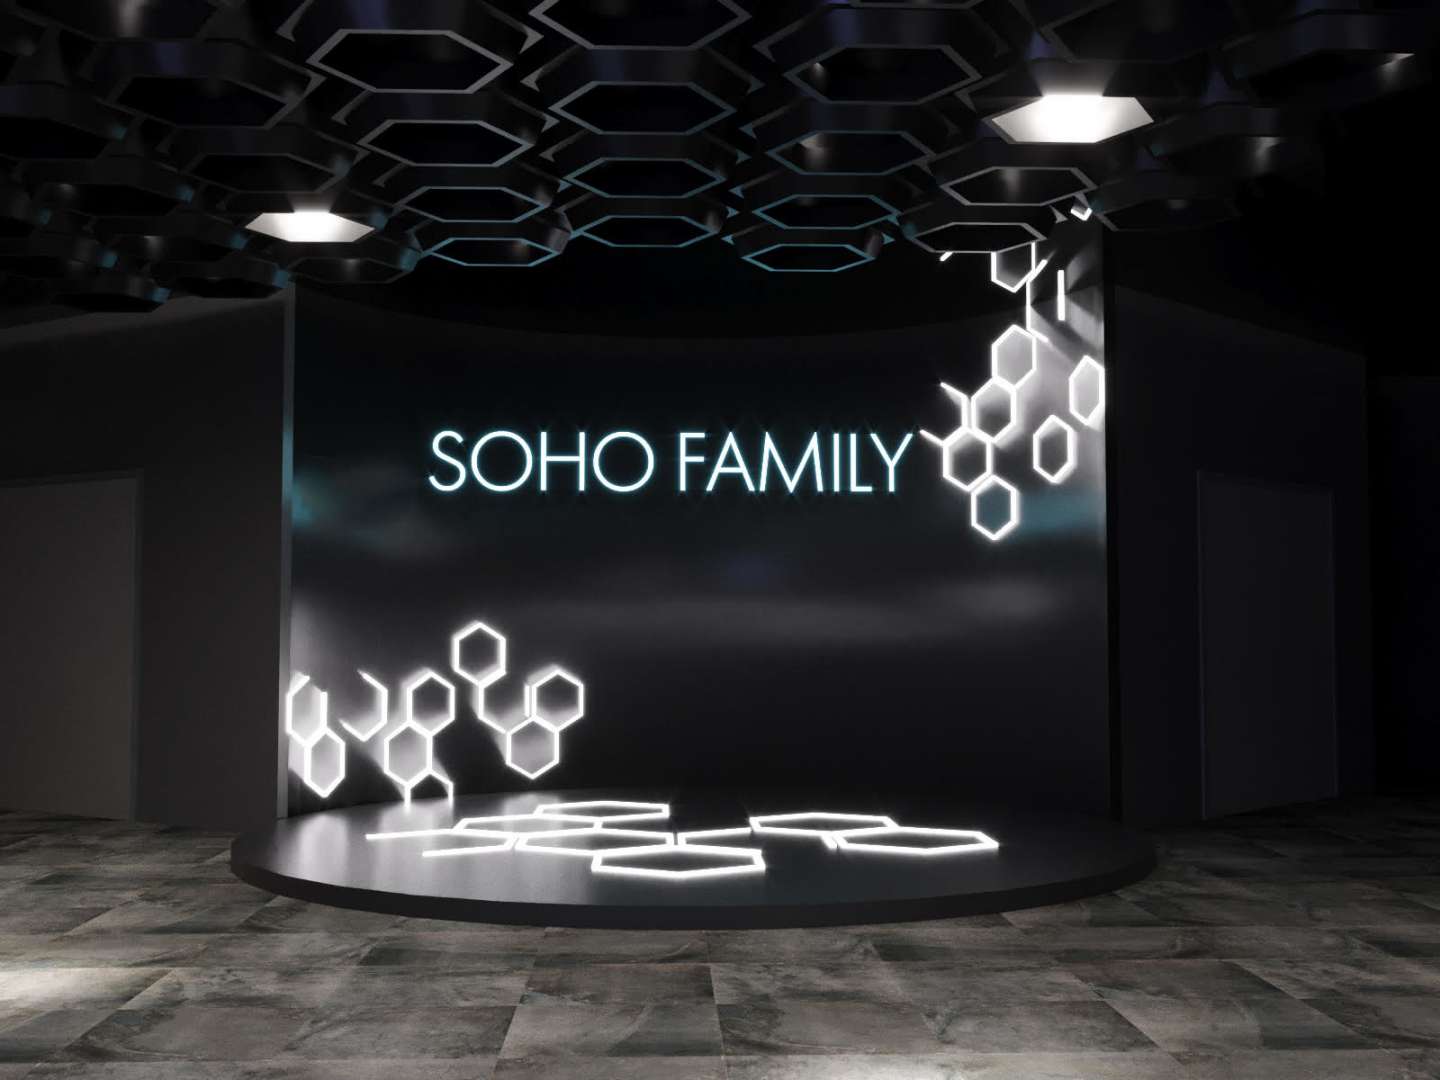 Soho family